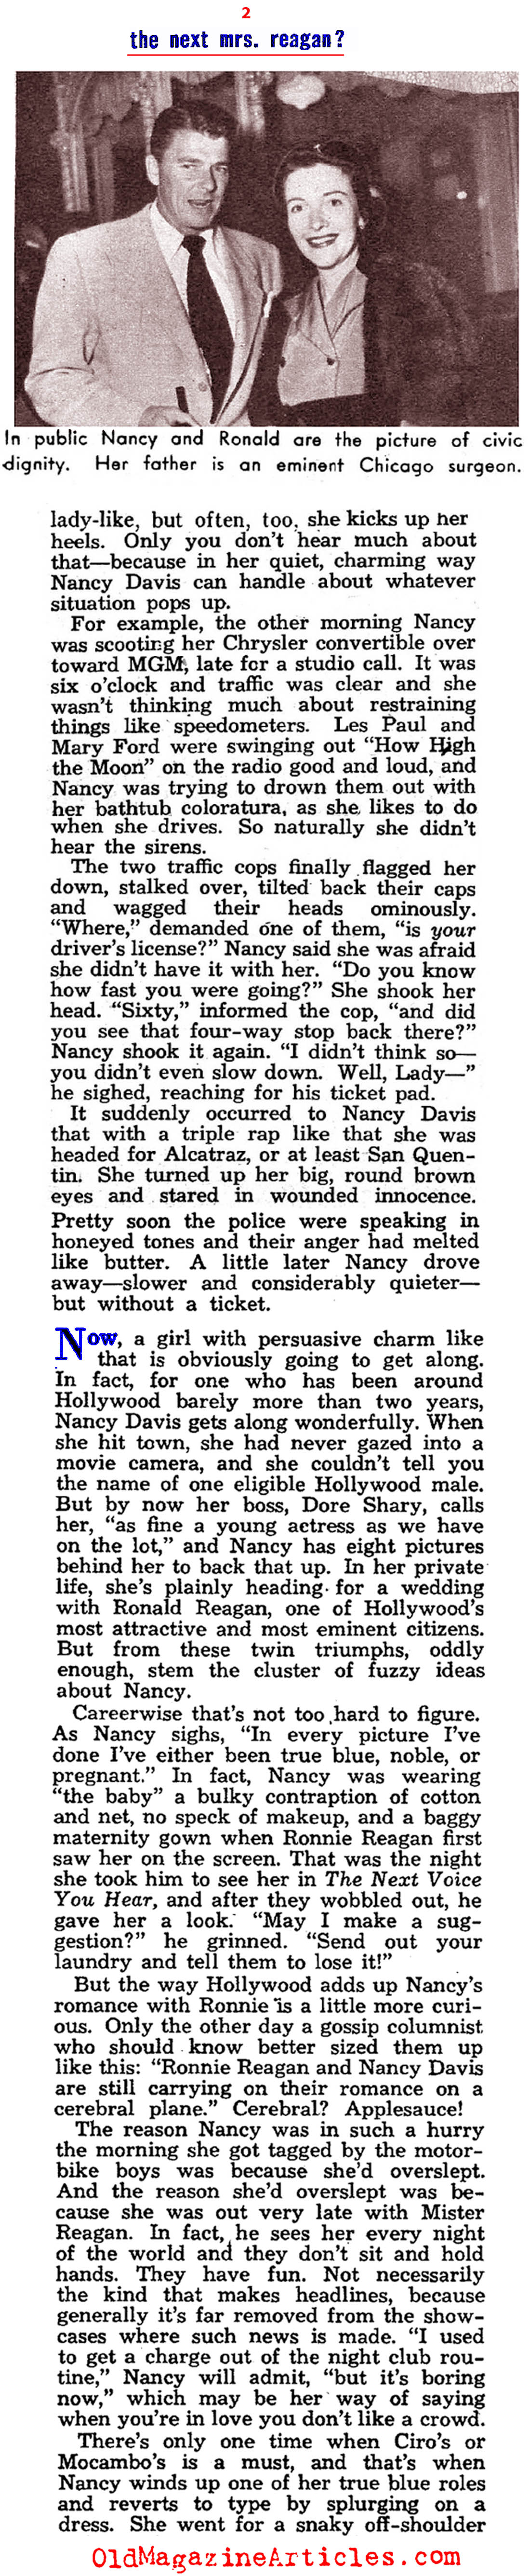 The Young Nancy Reagan (Modern Screen, 1951) 